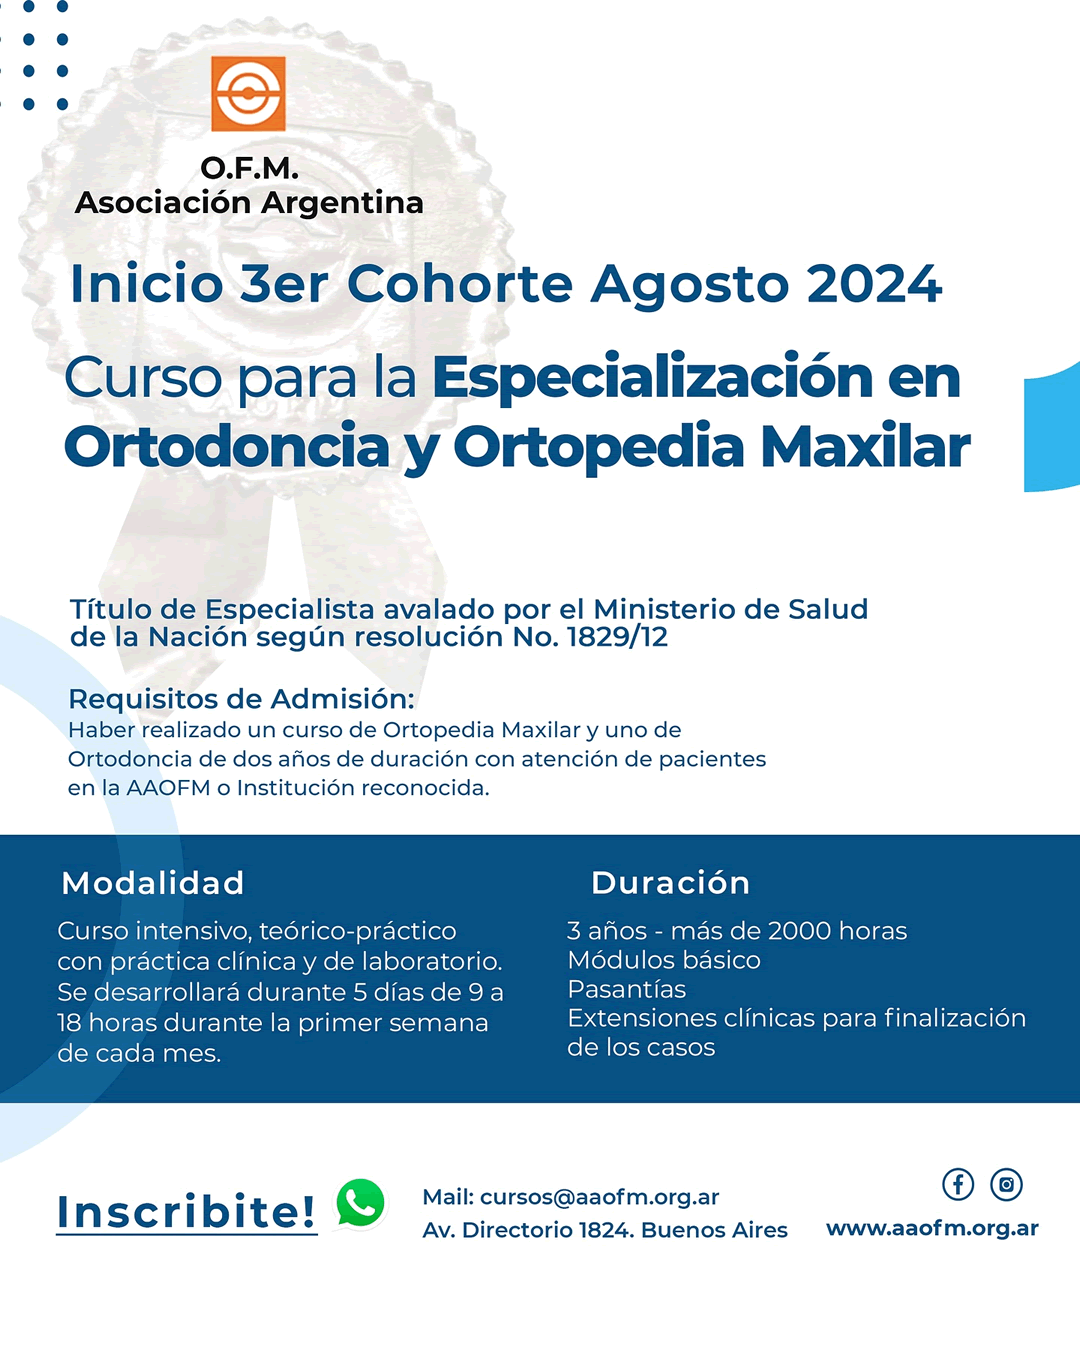 Curso para la Especialización en Ortopedia y Ortodoncia desde el Funcionalismo